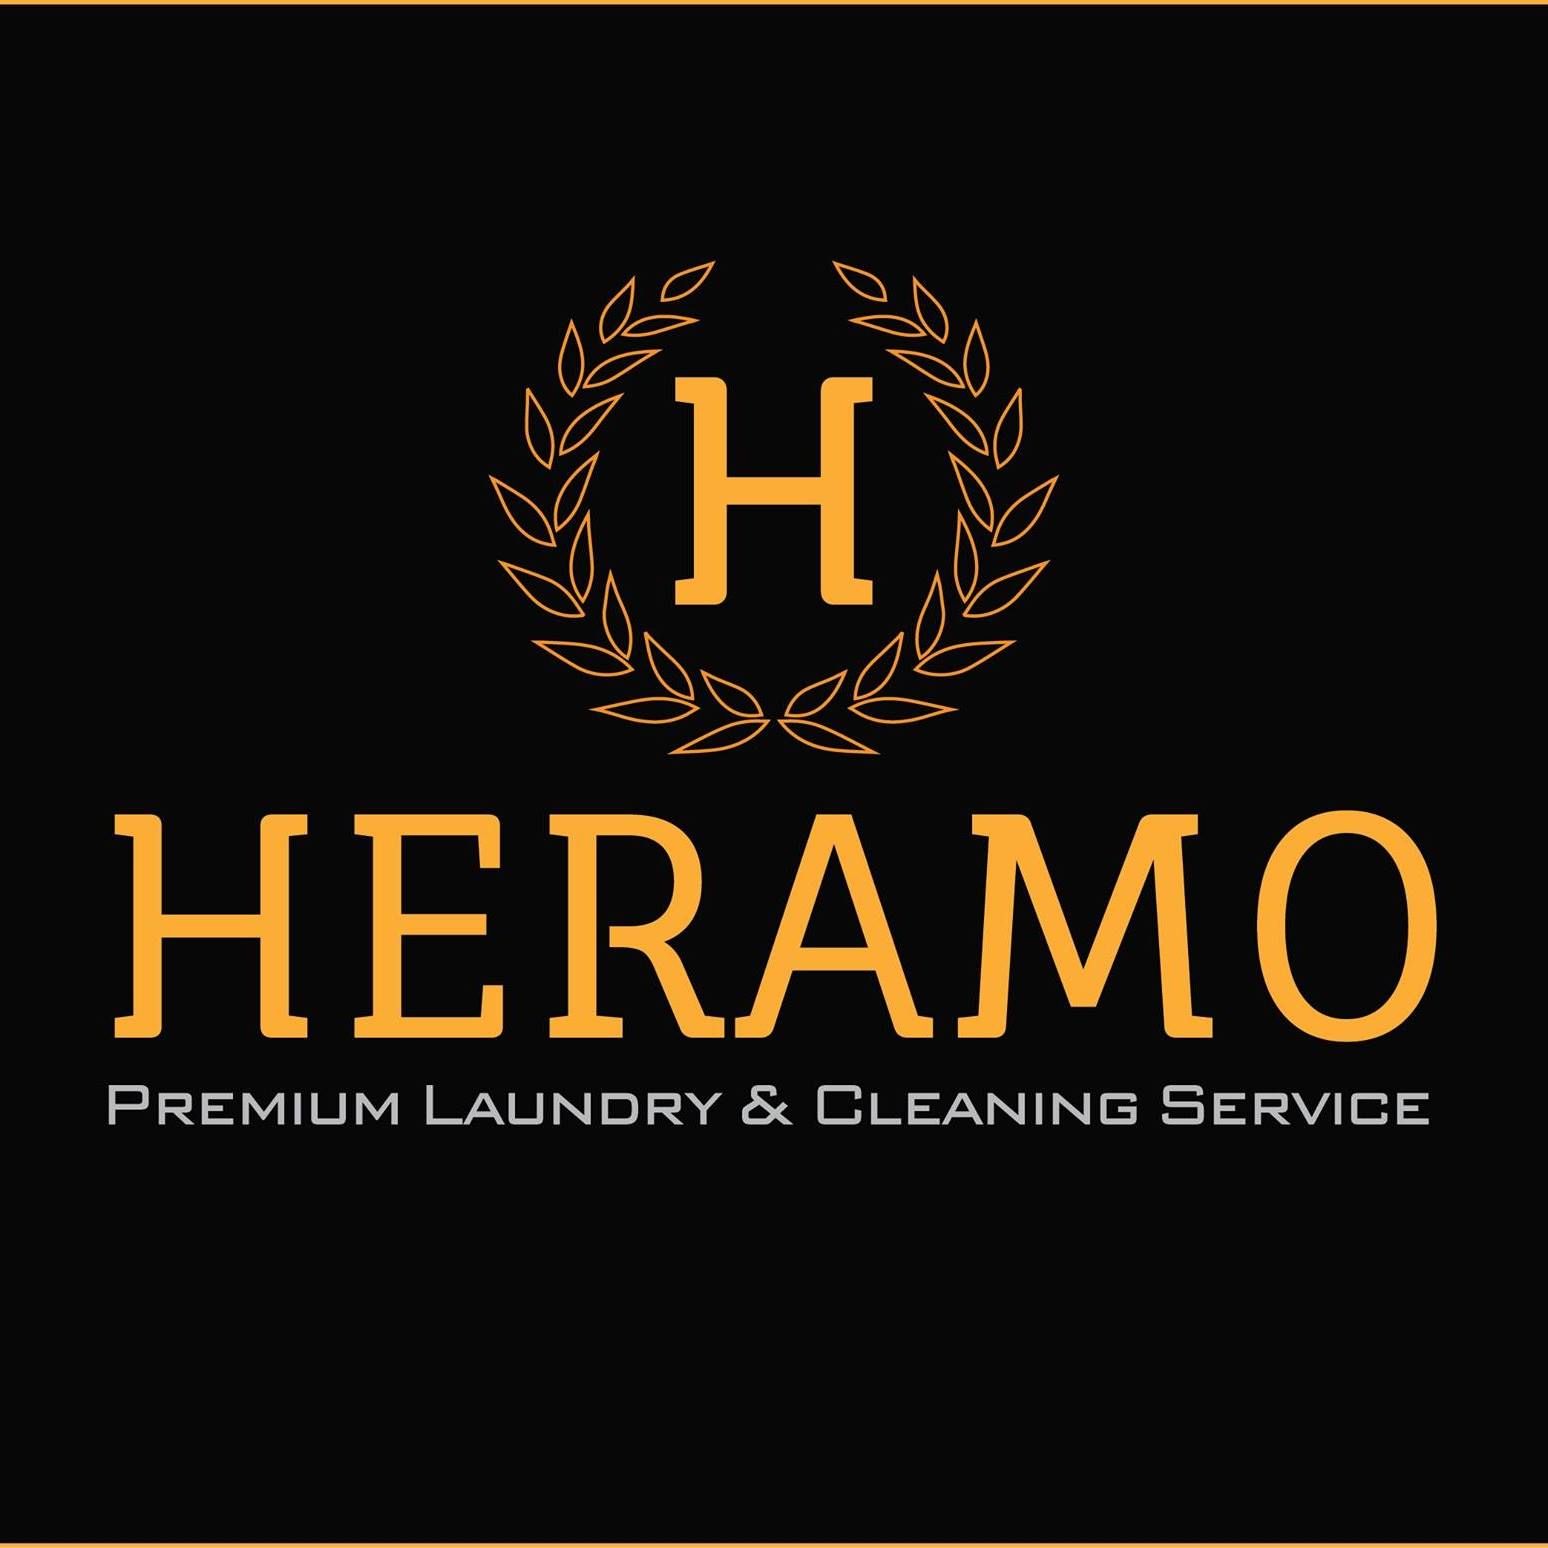 HERAMO